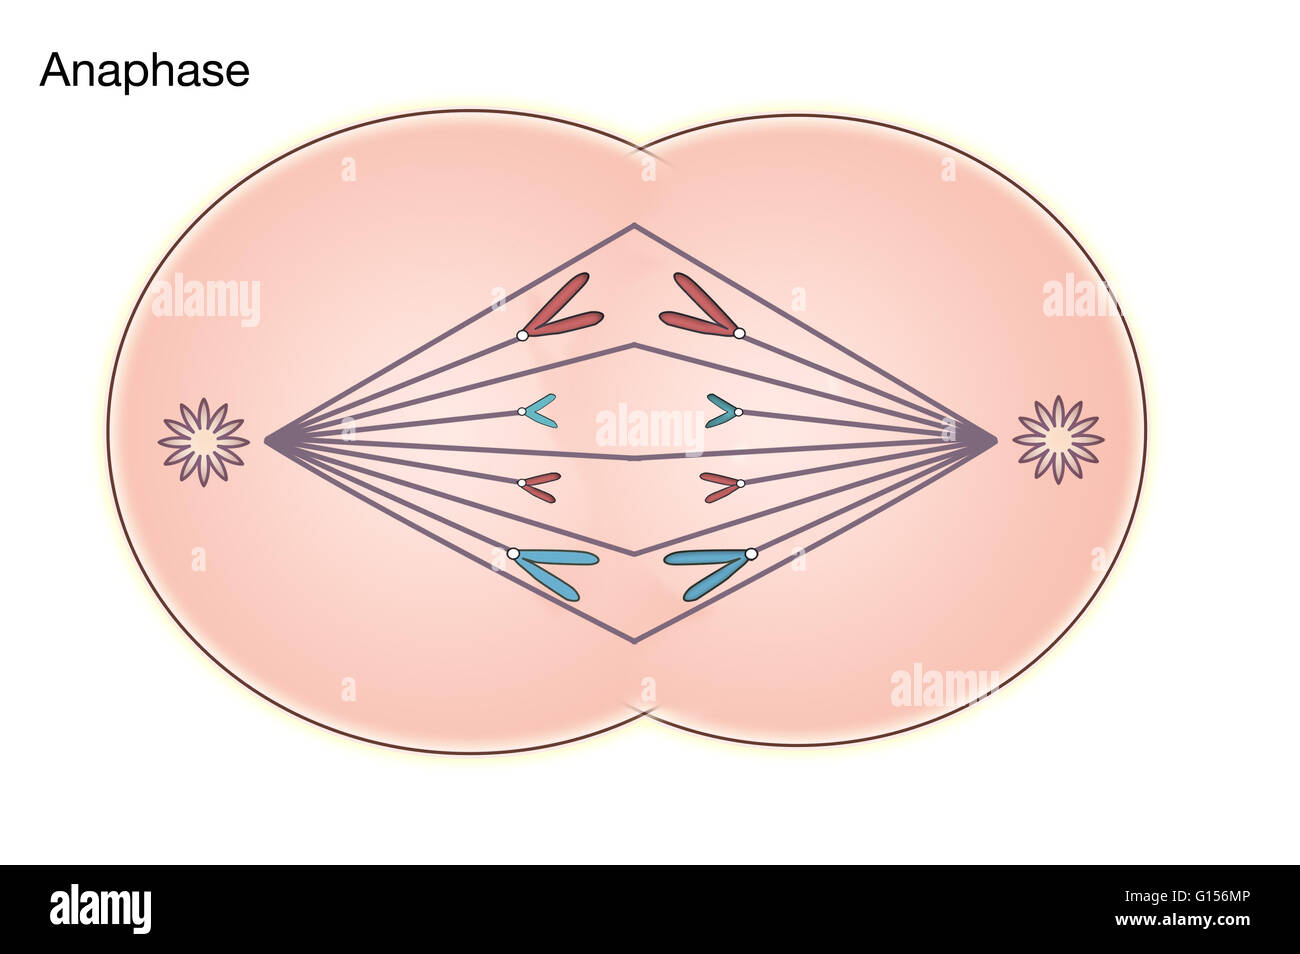 Diagramm der Anaphase der Mitose in einer tierischen Zelle. Stockfoto